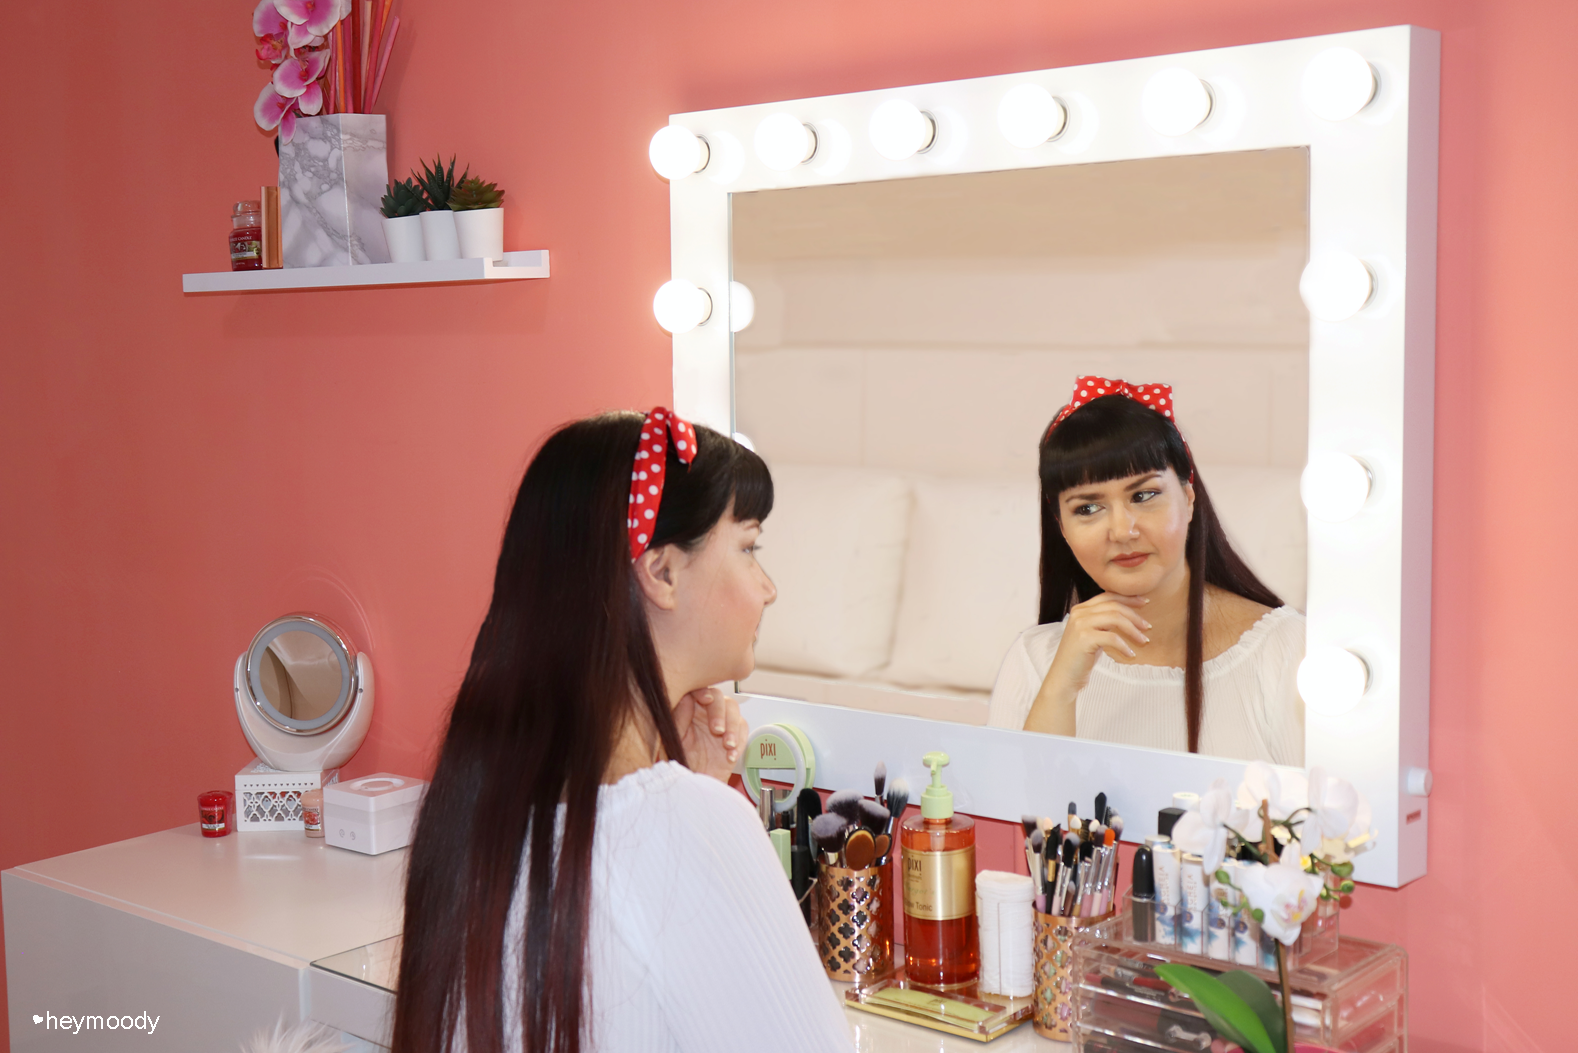 La postazione trucco di beauty blogger e makeup artists